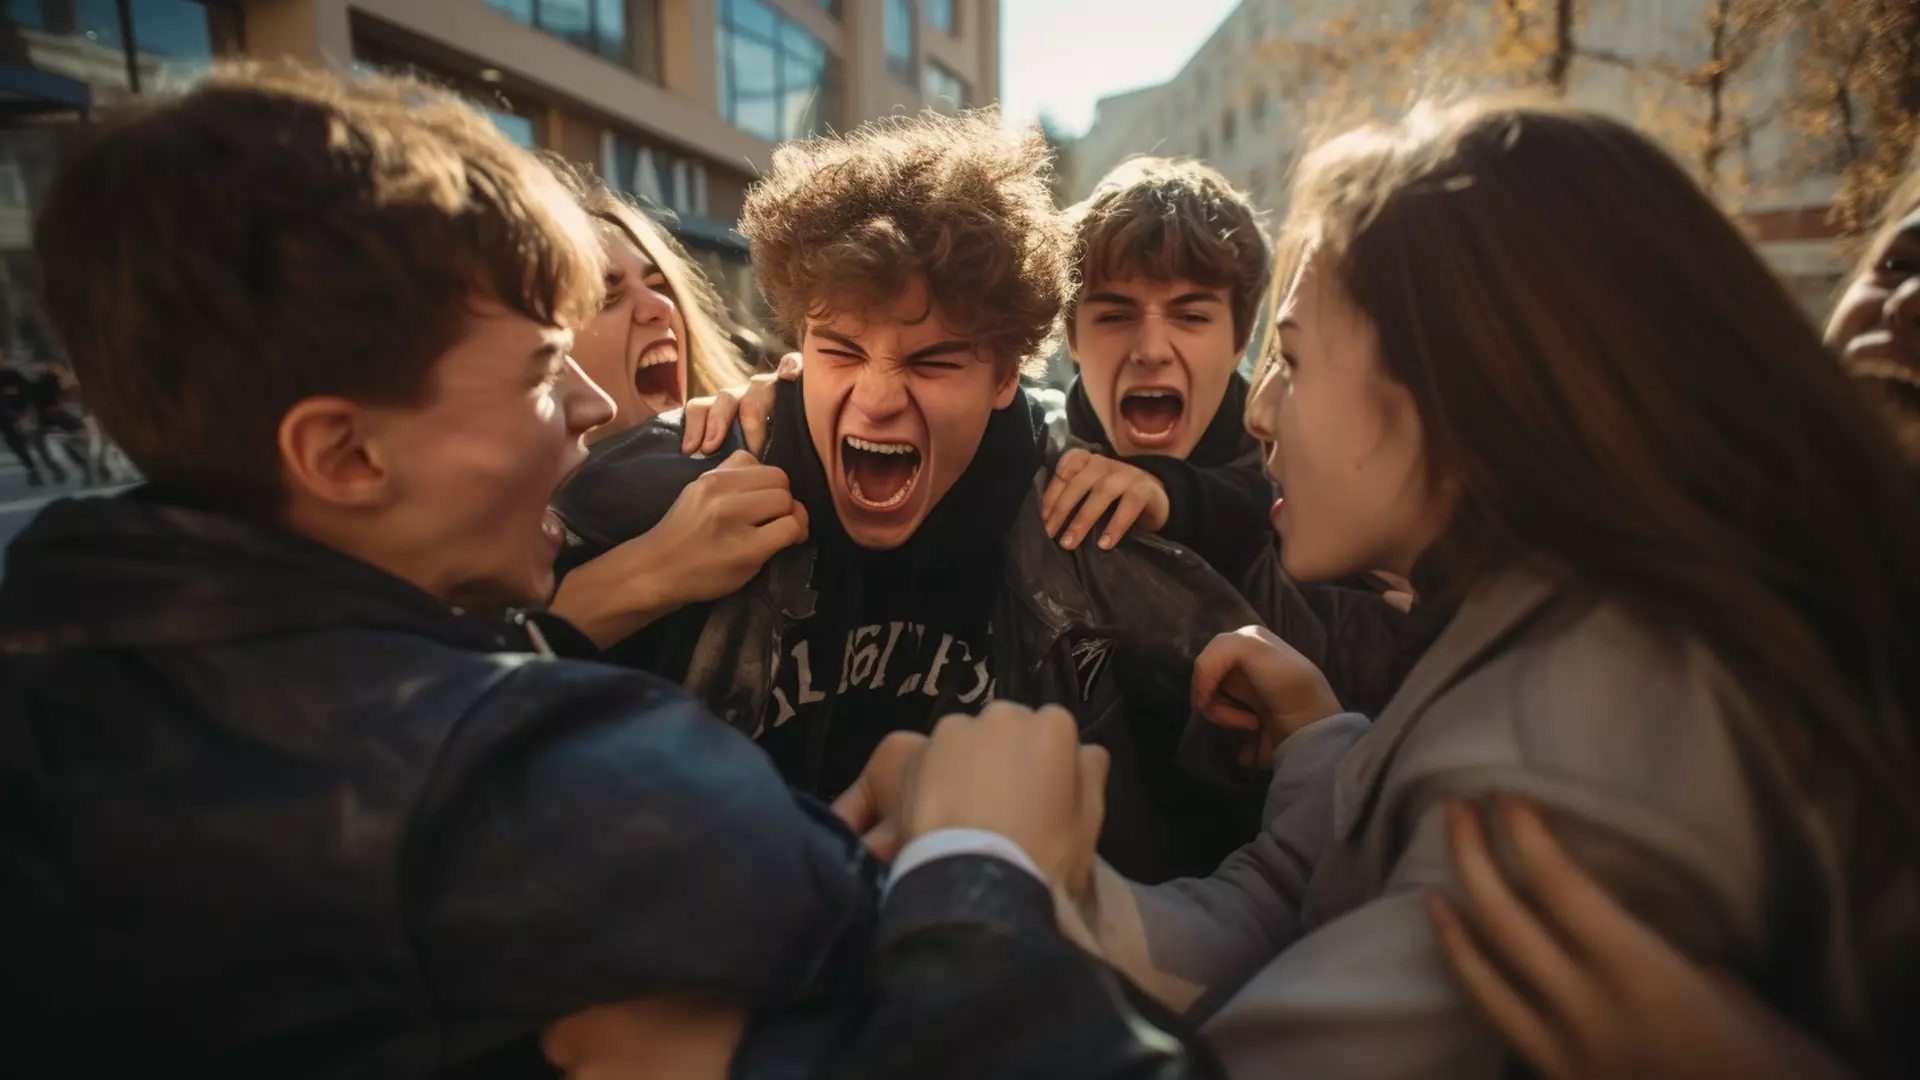 Конфликт между бандой подростков и школьником продолжается.